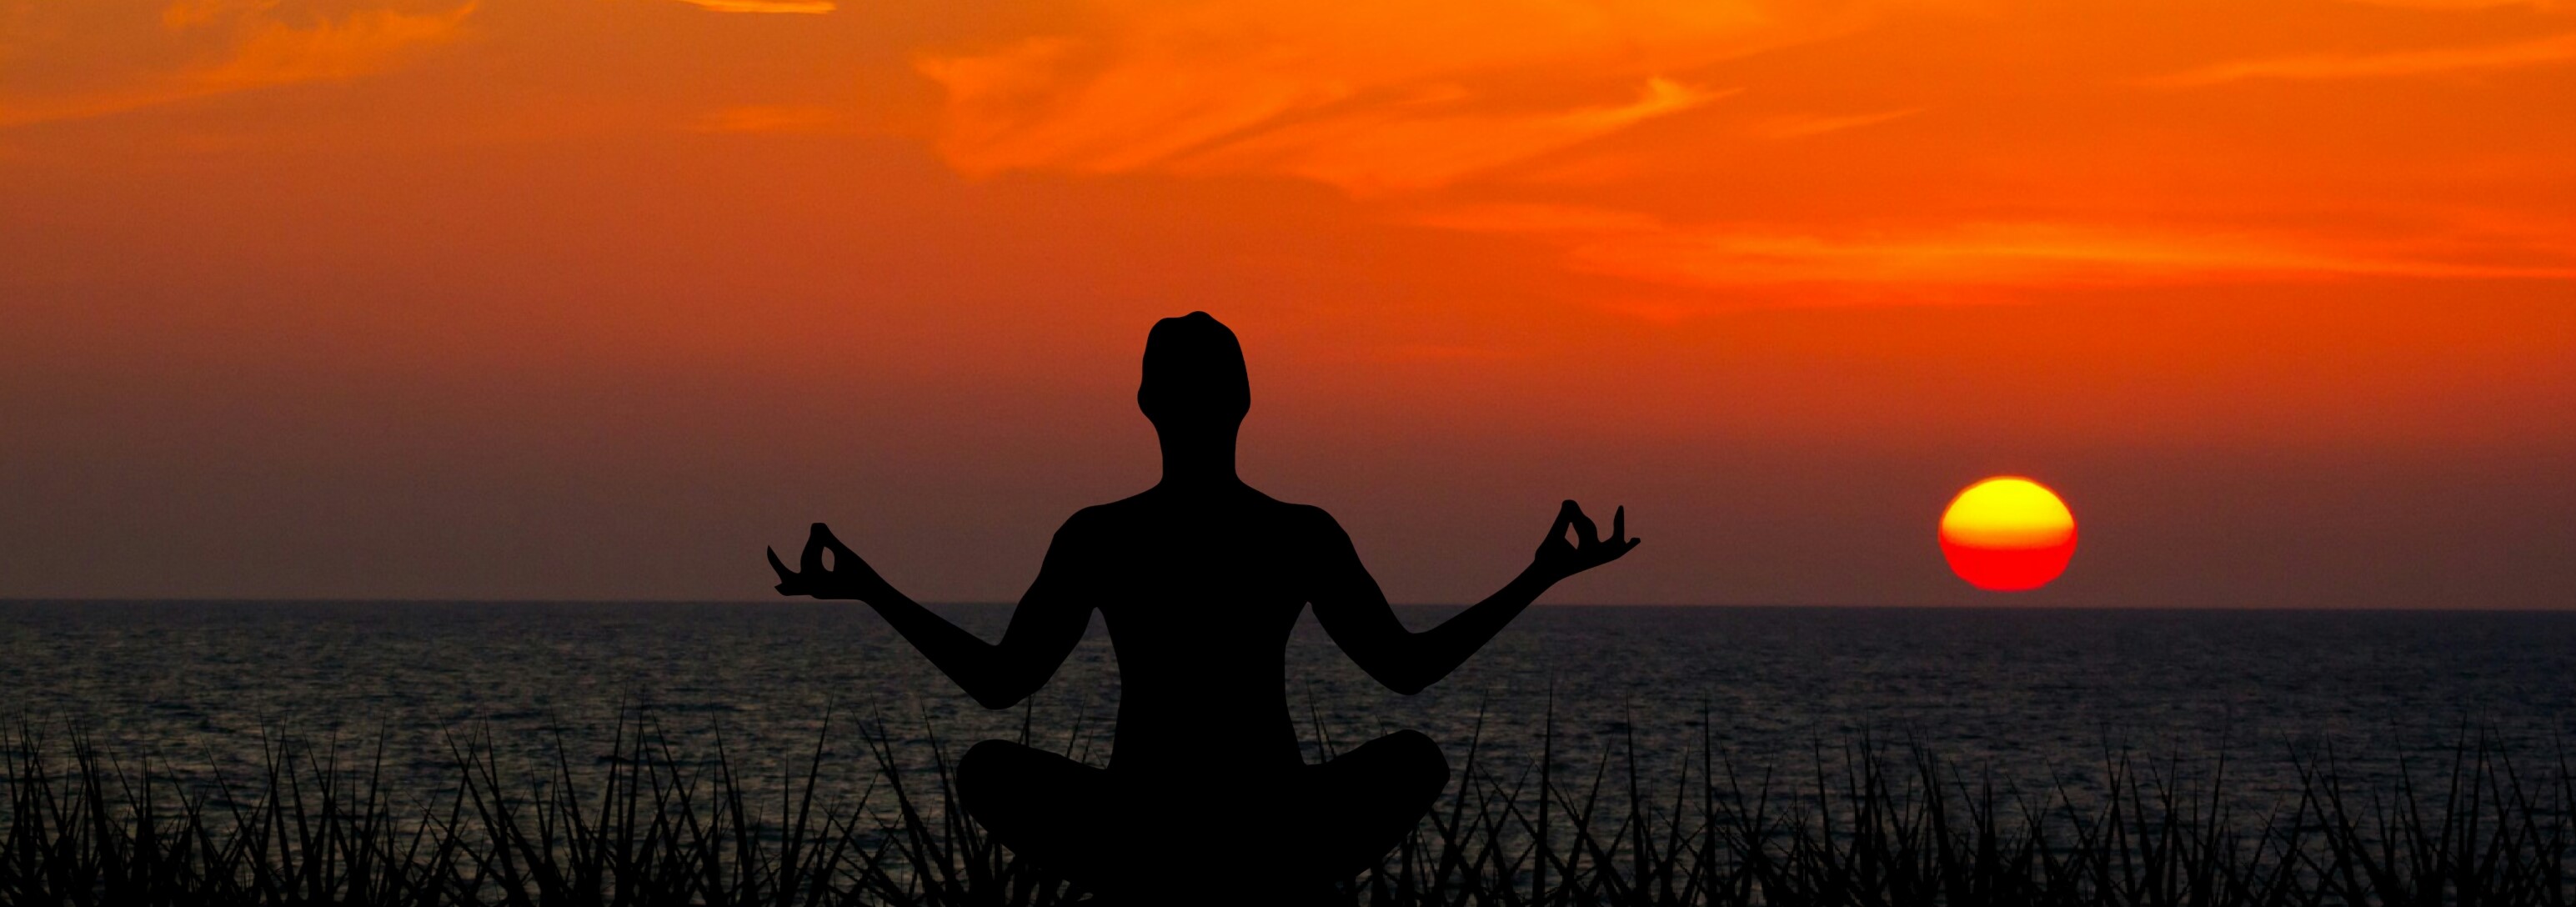 meditating-sunset-meditation-yoga-nature-peace cropped